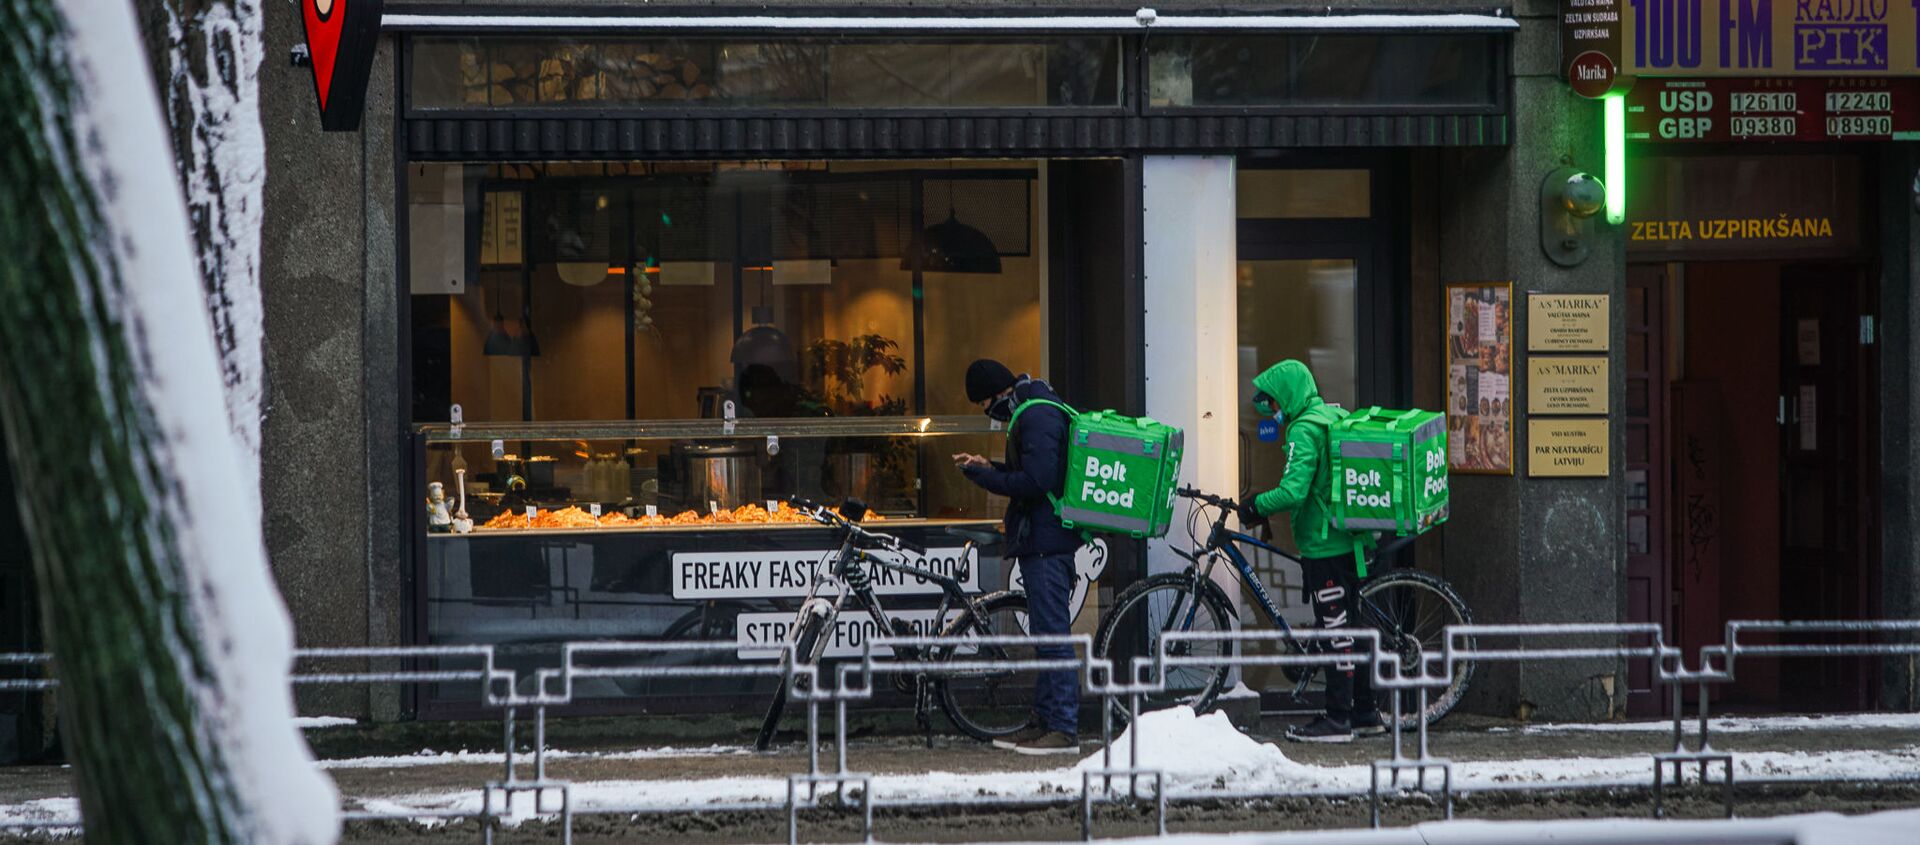 Доставщики еды на велосипедах ожидают готовности заказа - Sputnik Латвия, 1920, 10.02.2021